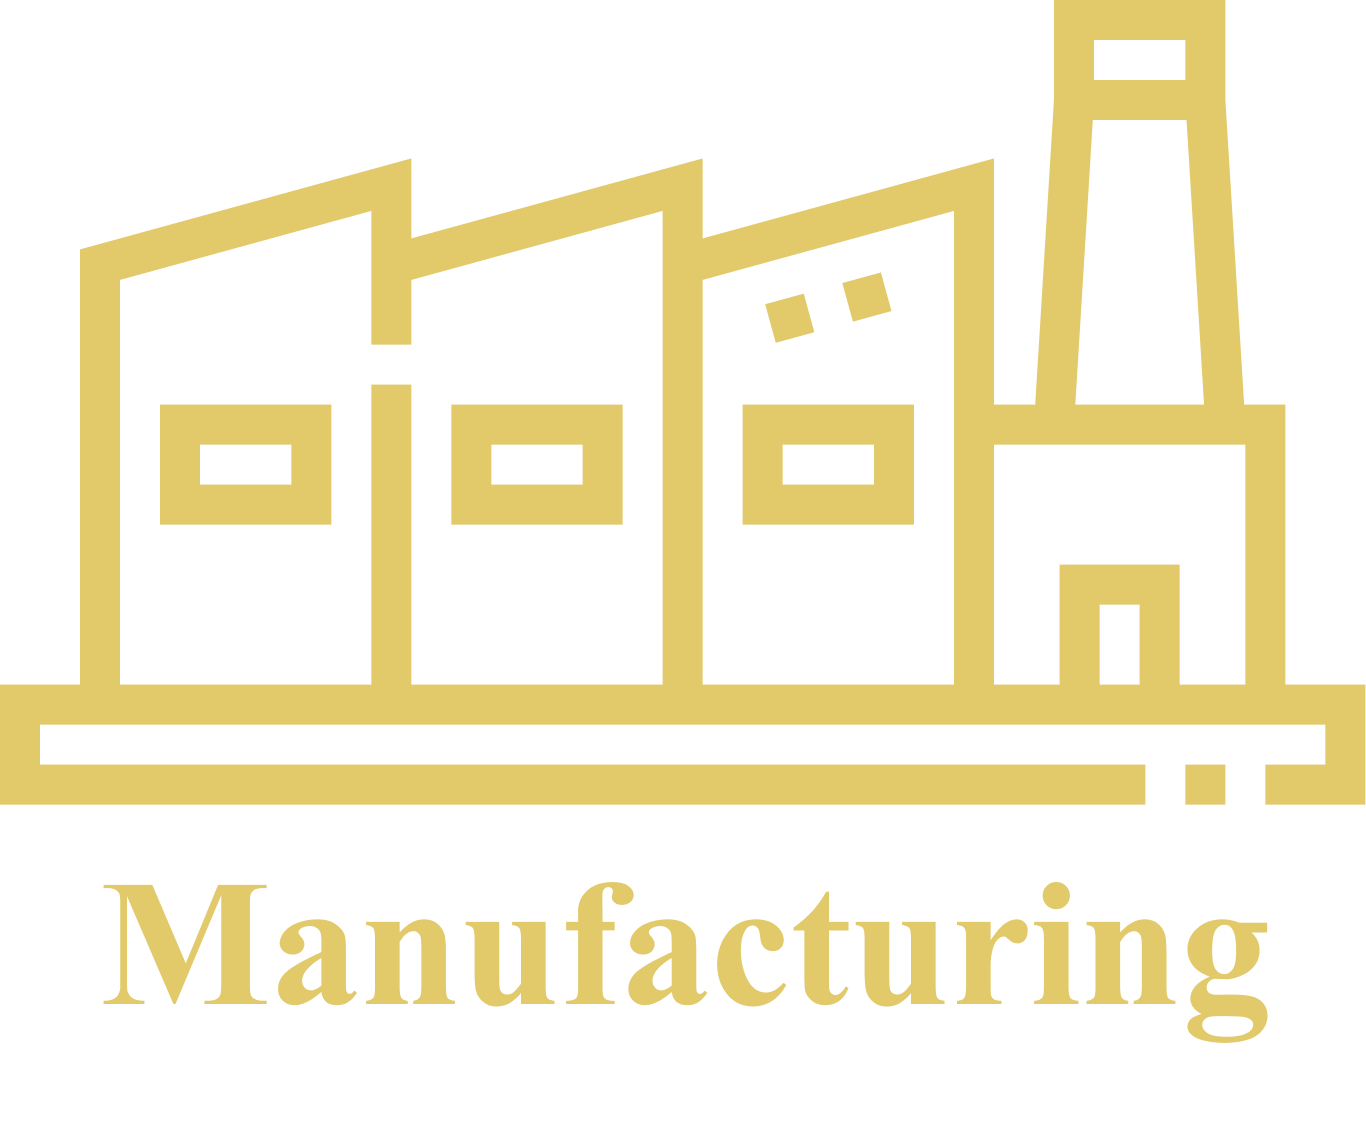 Manufacturing Unit